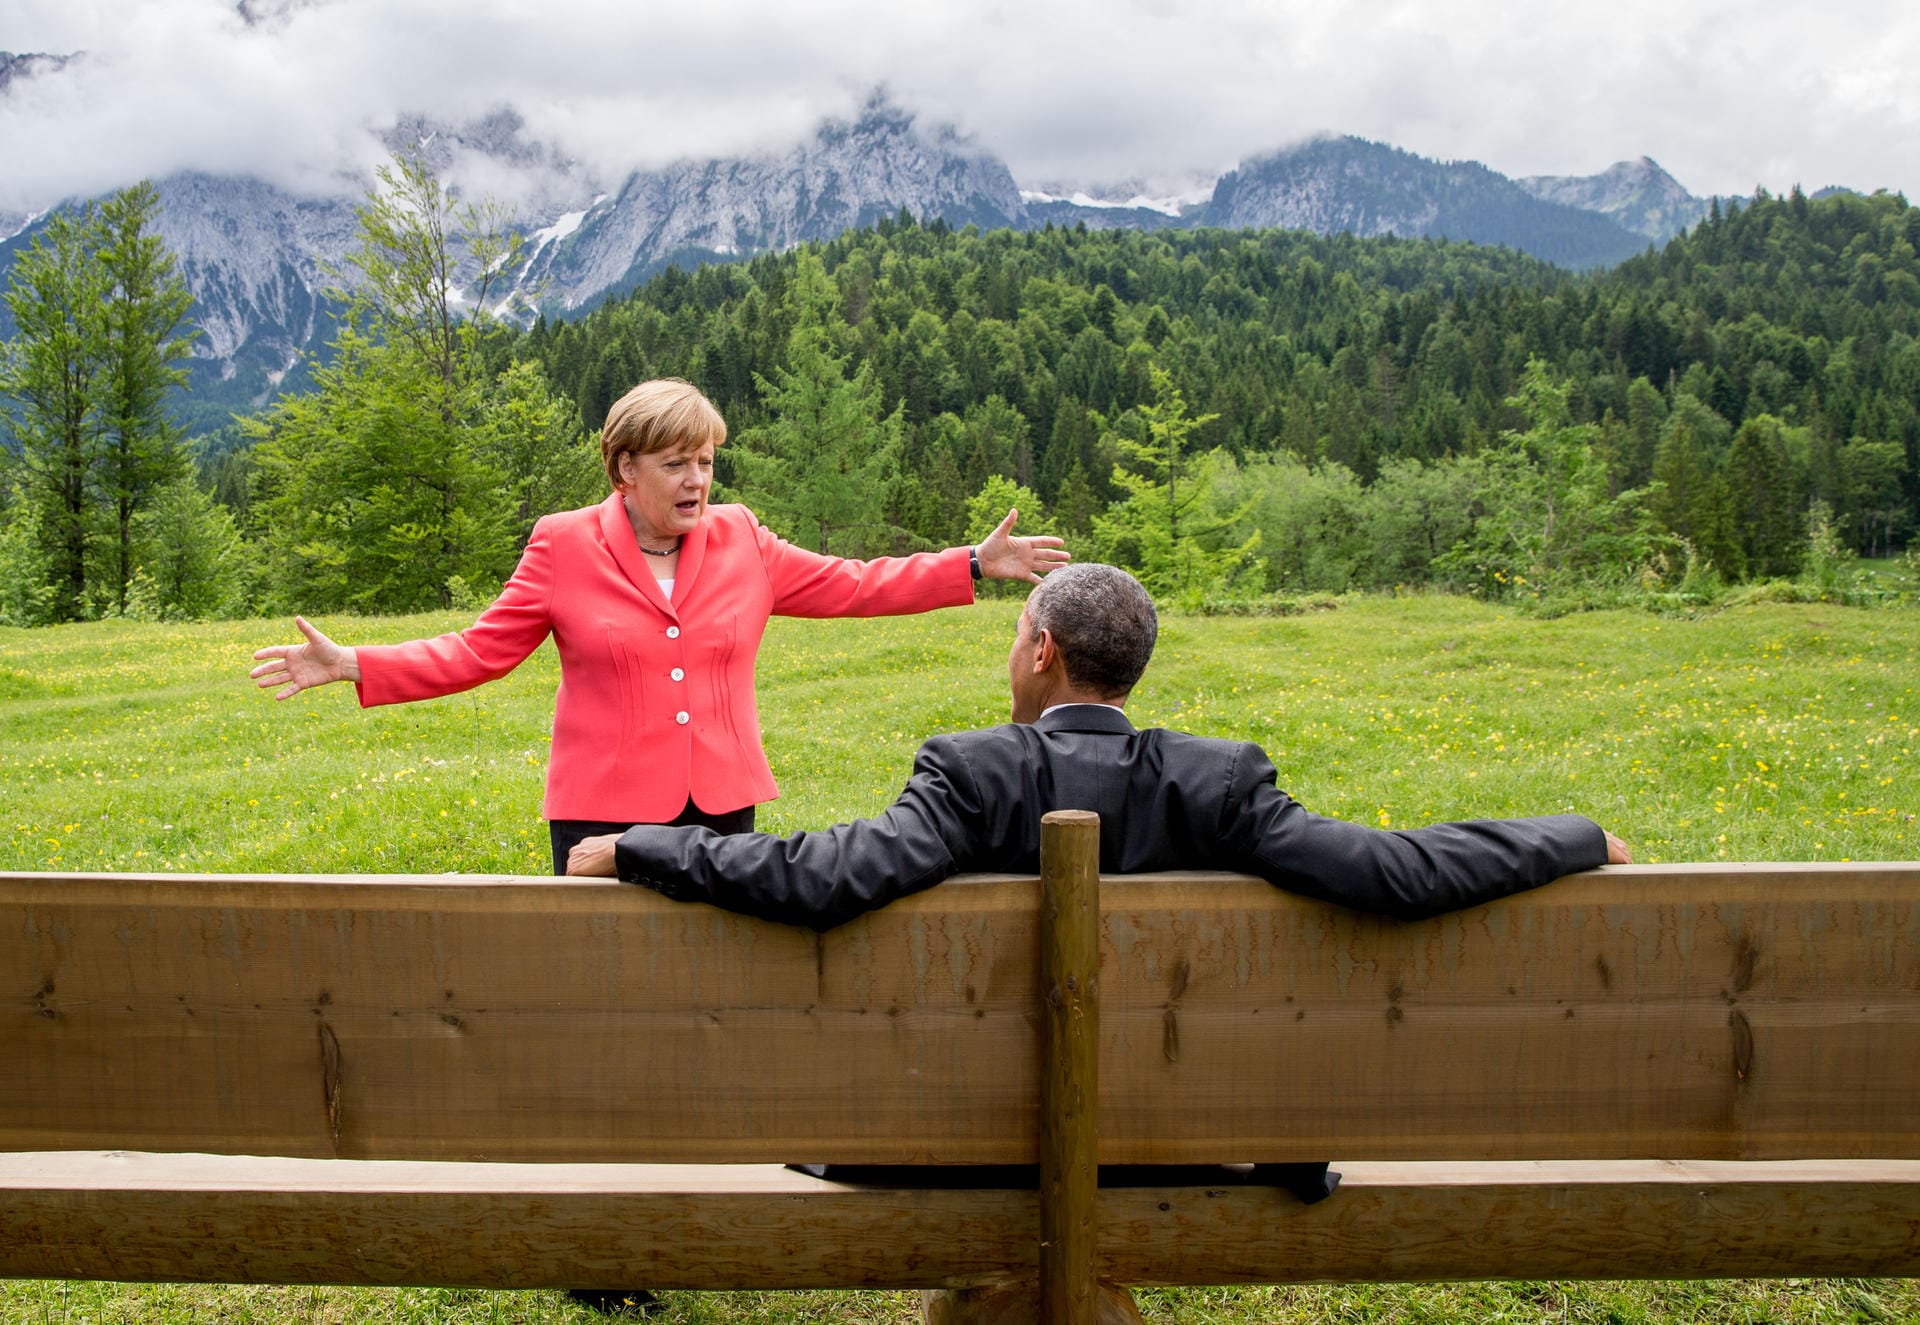 7./8. Juni 2015: Merkel lädt zum G7-Gipfel auf Schloss Elmau in Bayern. Themen sind vor allem der Ukraine-Konflikt und Klimaschutz. Es wird das Ziel ausgegeben, "im Laufe des Jahrhunderts" eine Weltwirtschaft ohne die Nutzung von fossilen Energieträgern wie Kohle zu ermöglichen.